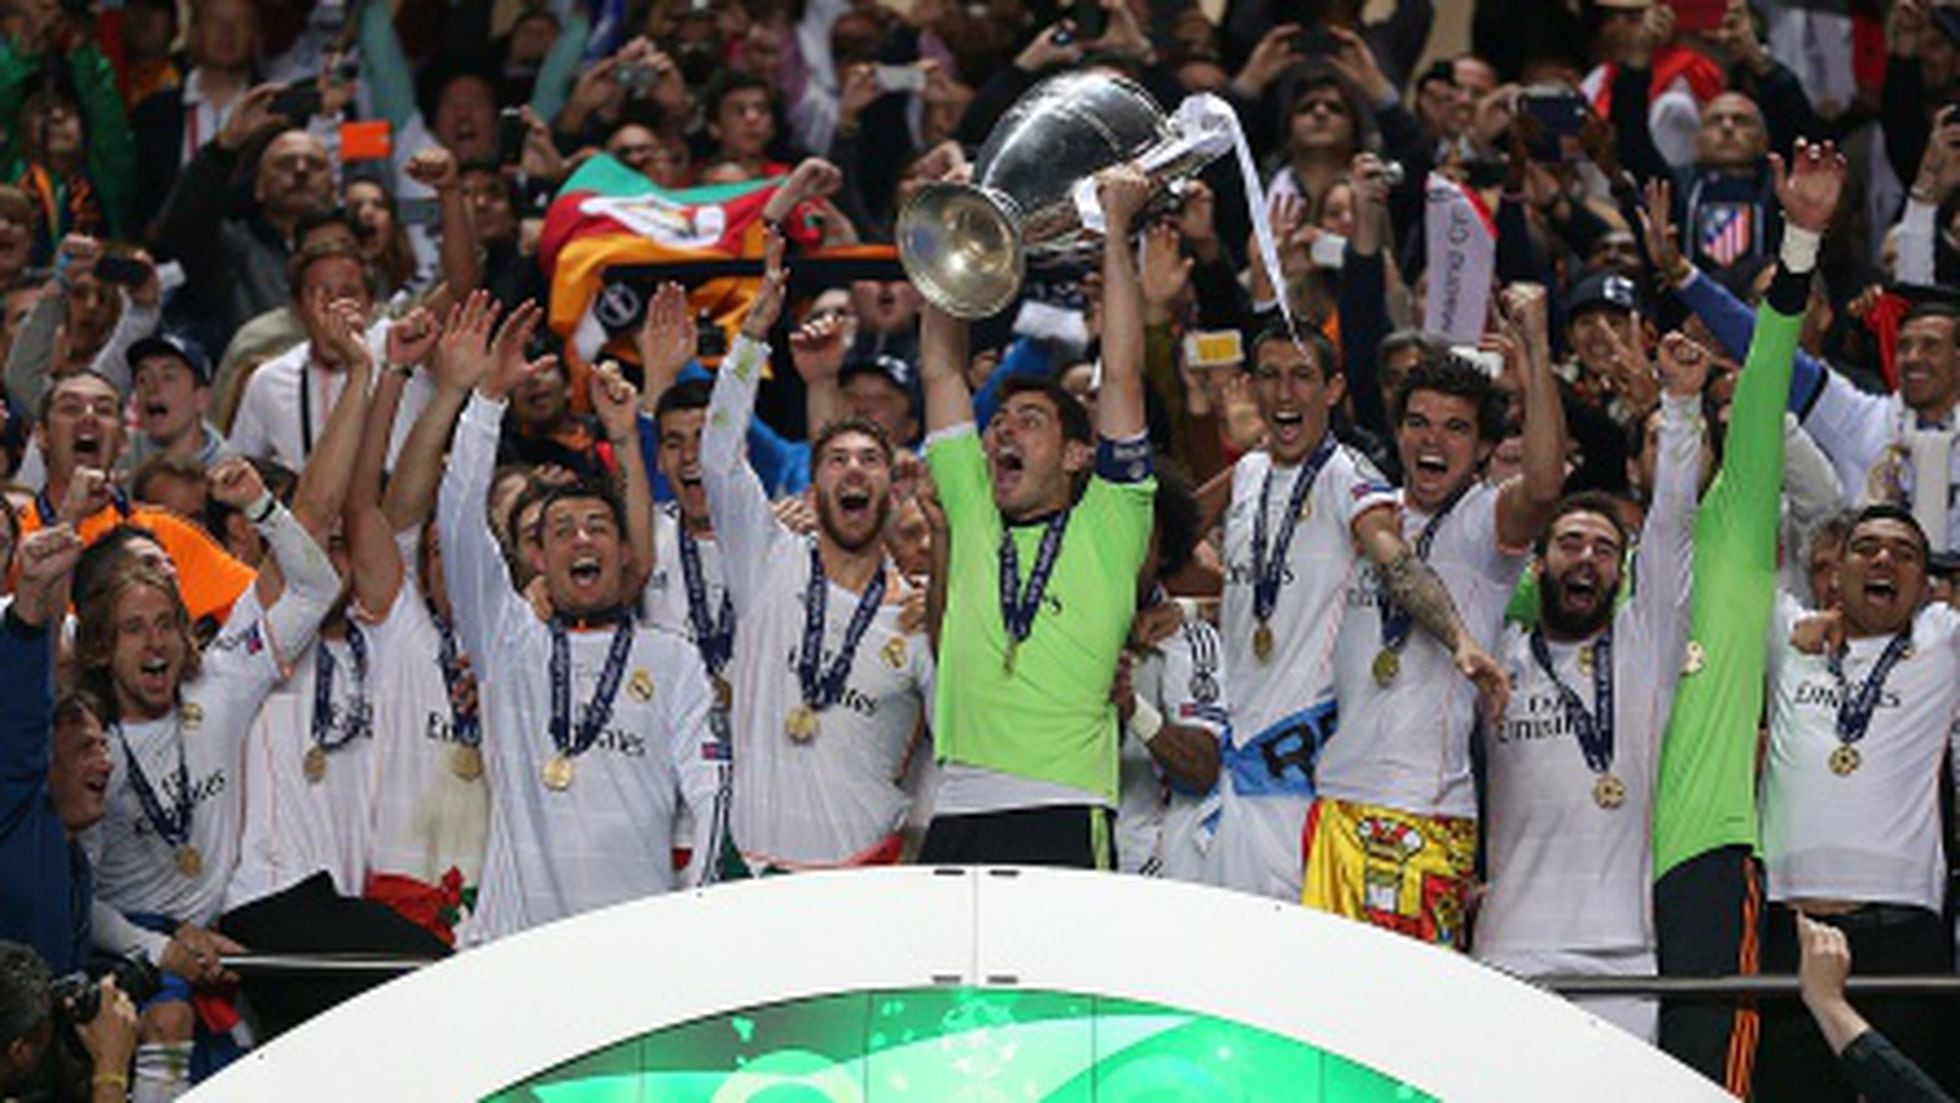 10 jogadores que mais jogaram a Champions pelo Real Madrid